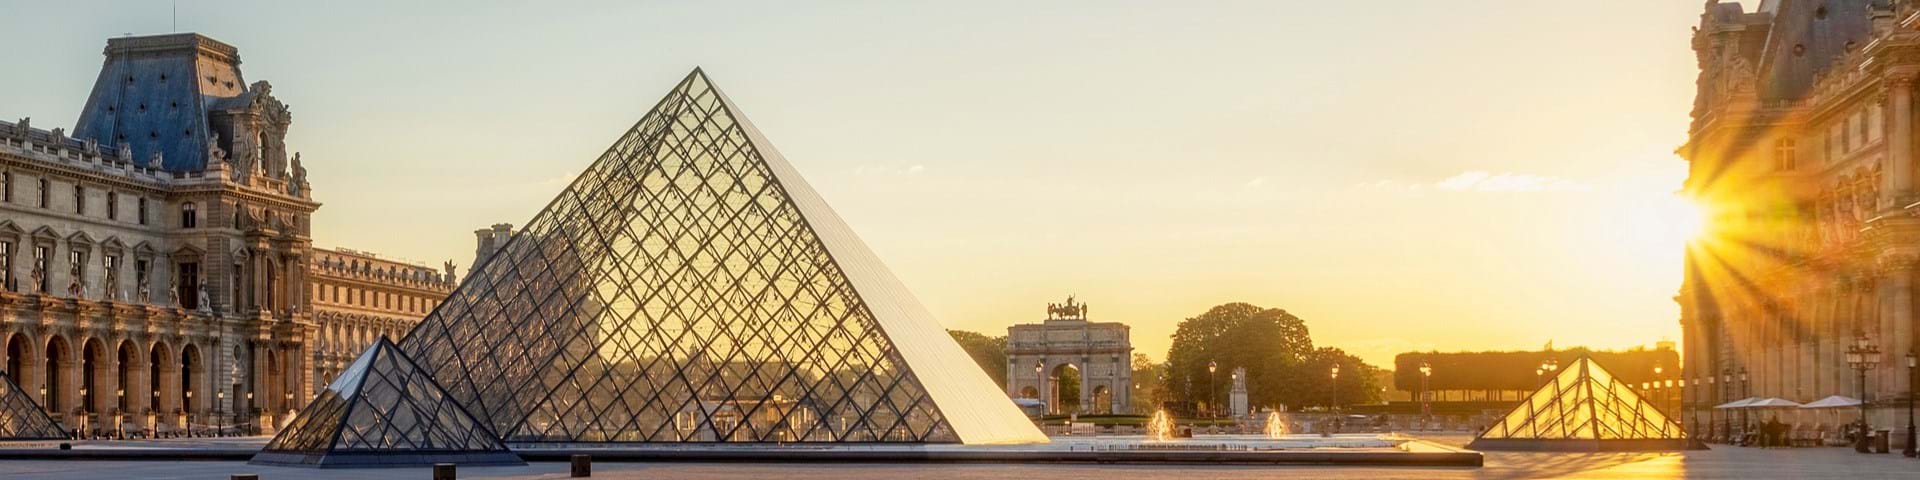 Louvre Tours